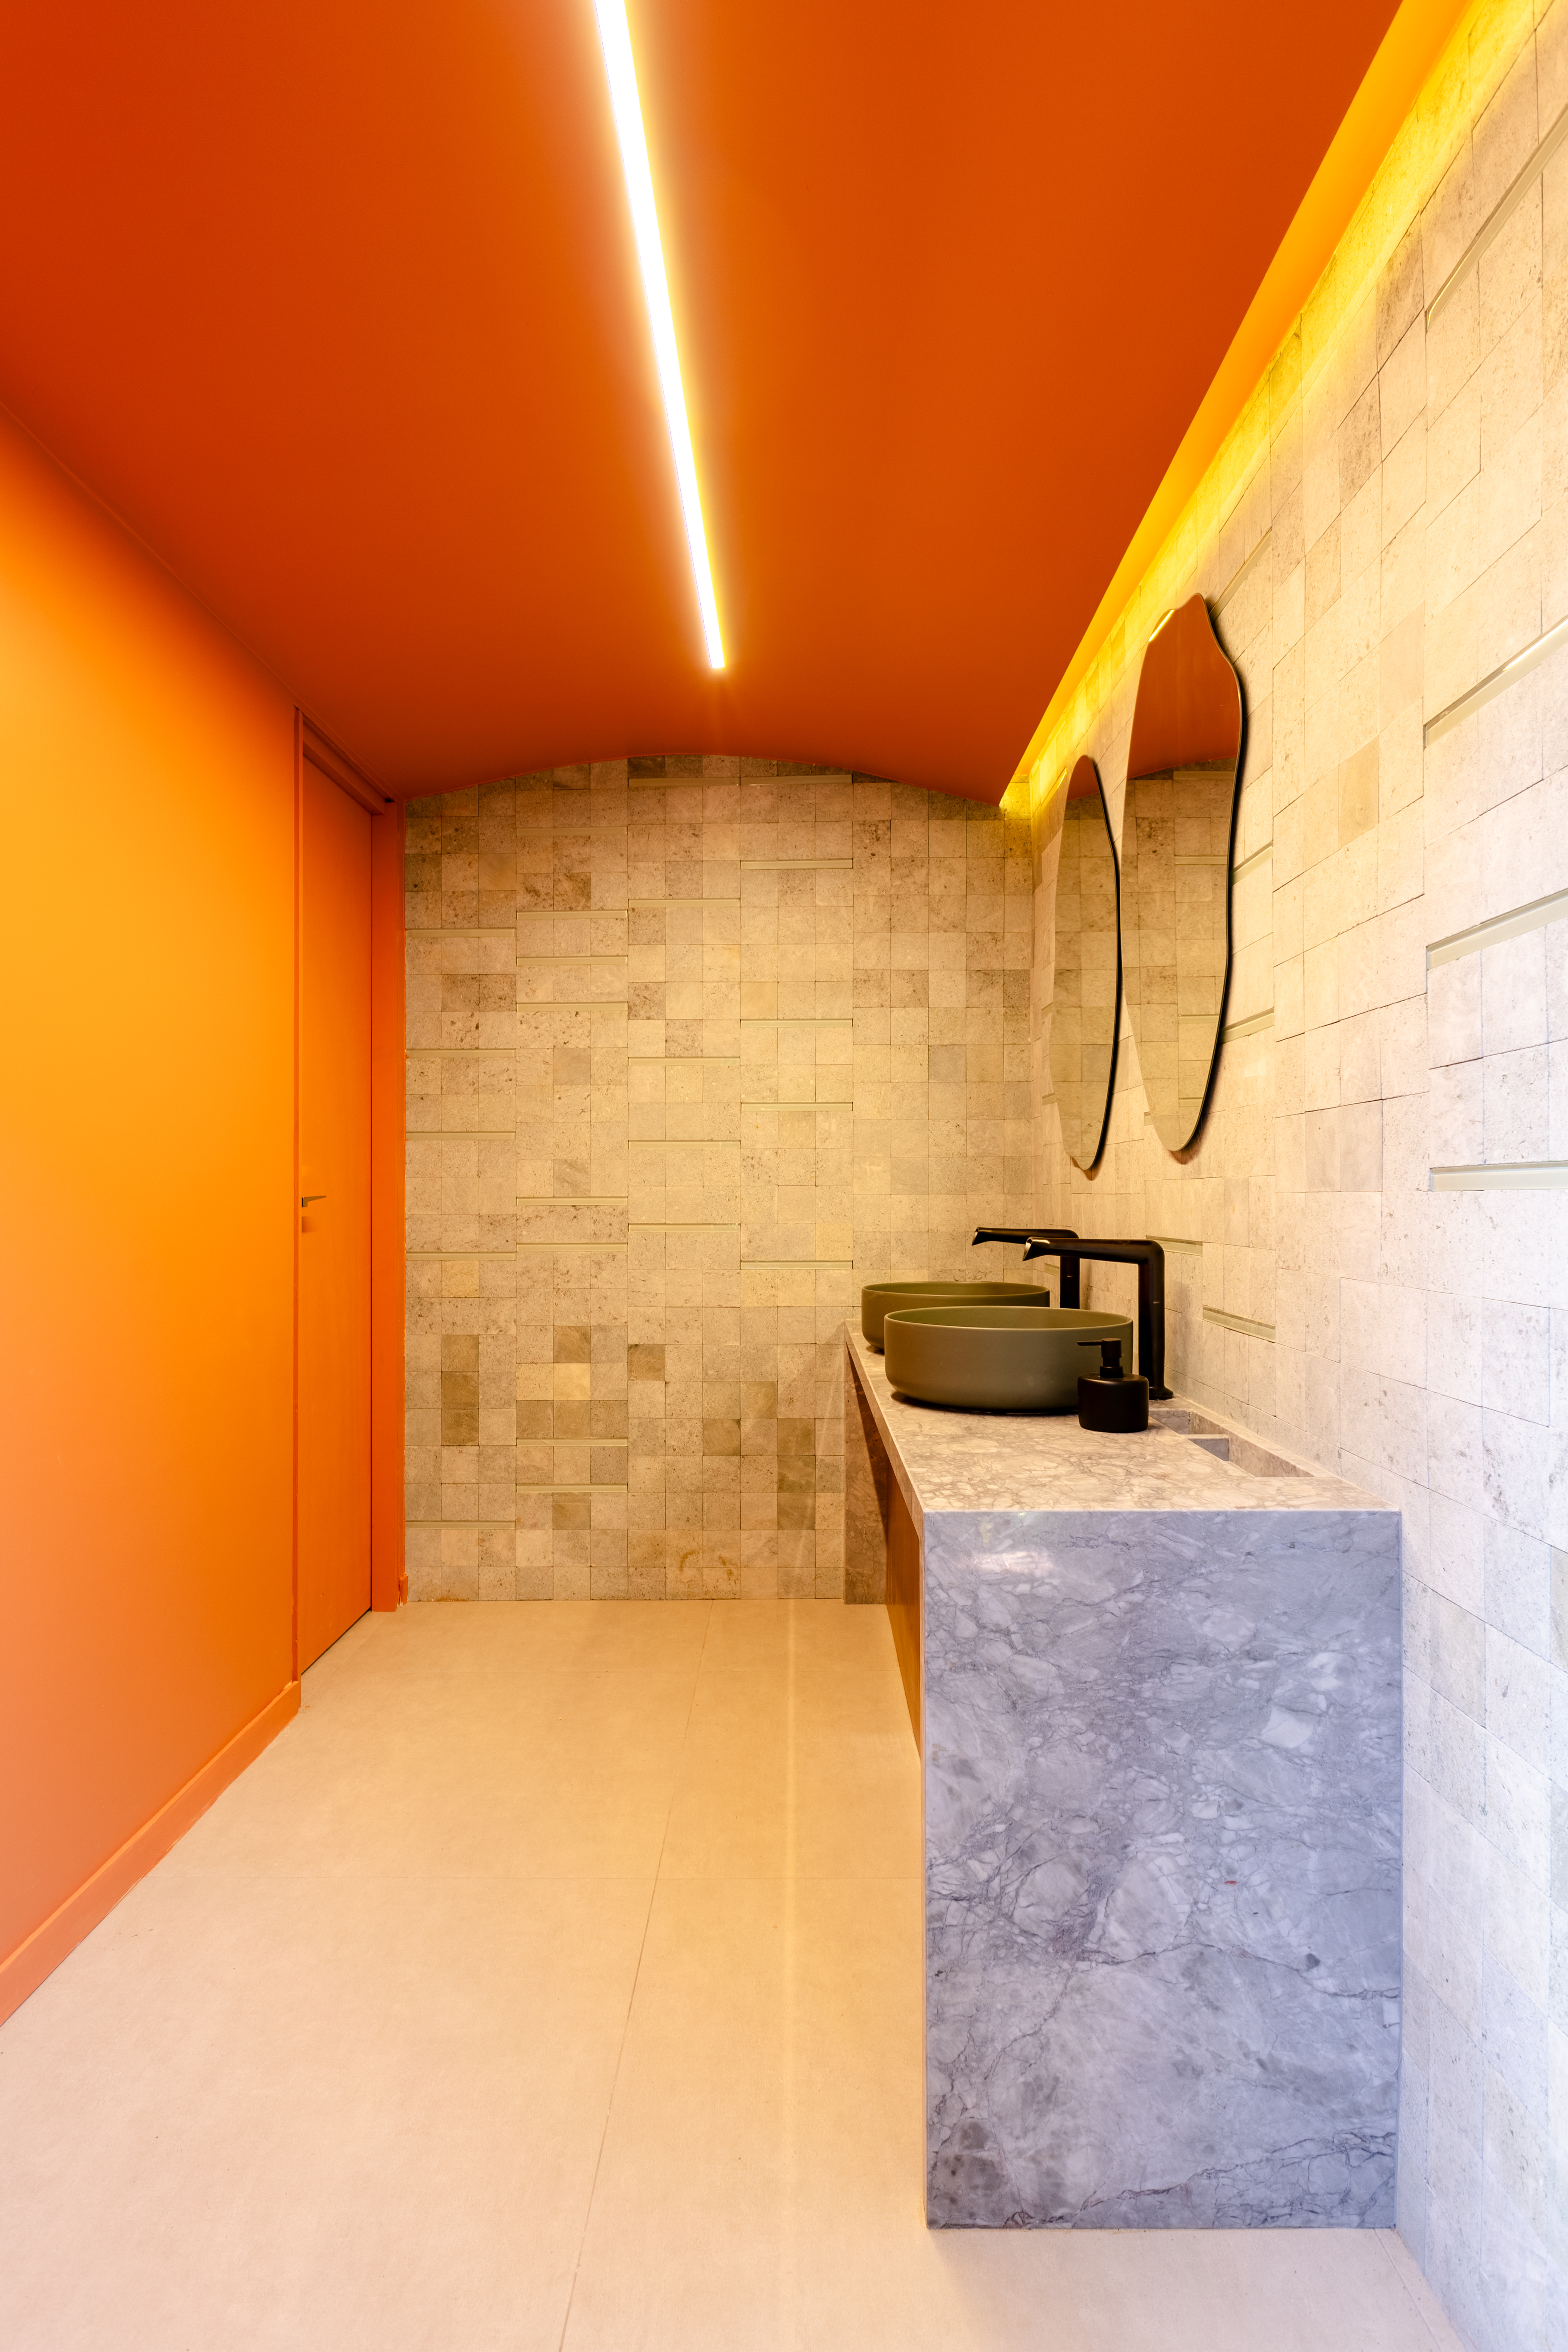 CASACOR Paraná: ambiente brinca com texturas, cores e sensações. Projeto de Fernanda Gonçalves. Na foto, banheiro com parede laranja e cubas verdes